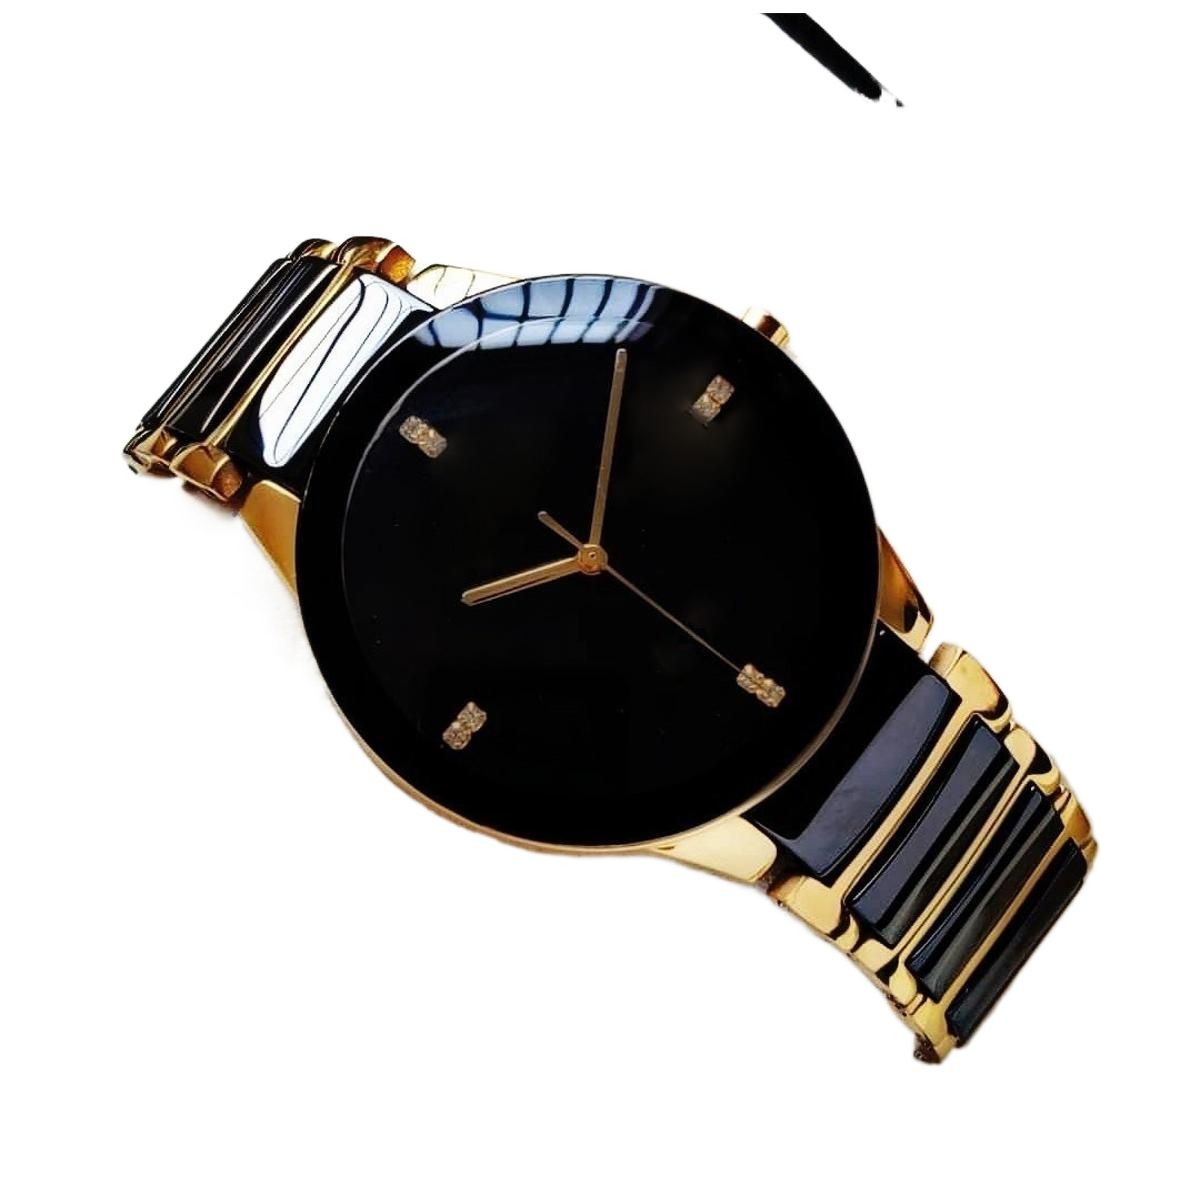 swisros watches 7000g | Used Watches in Mumbai | Home & Lifestyle Quikr  Bazaar Mumbai